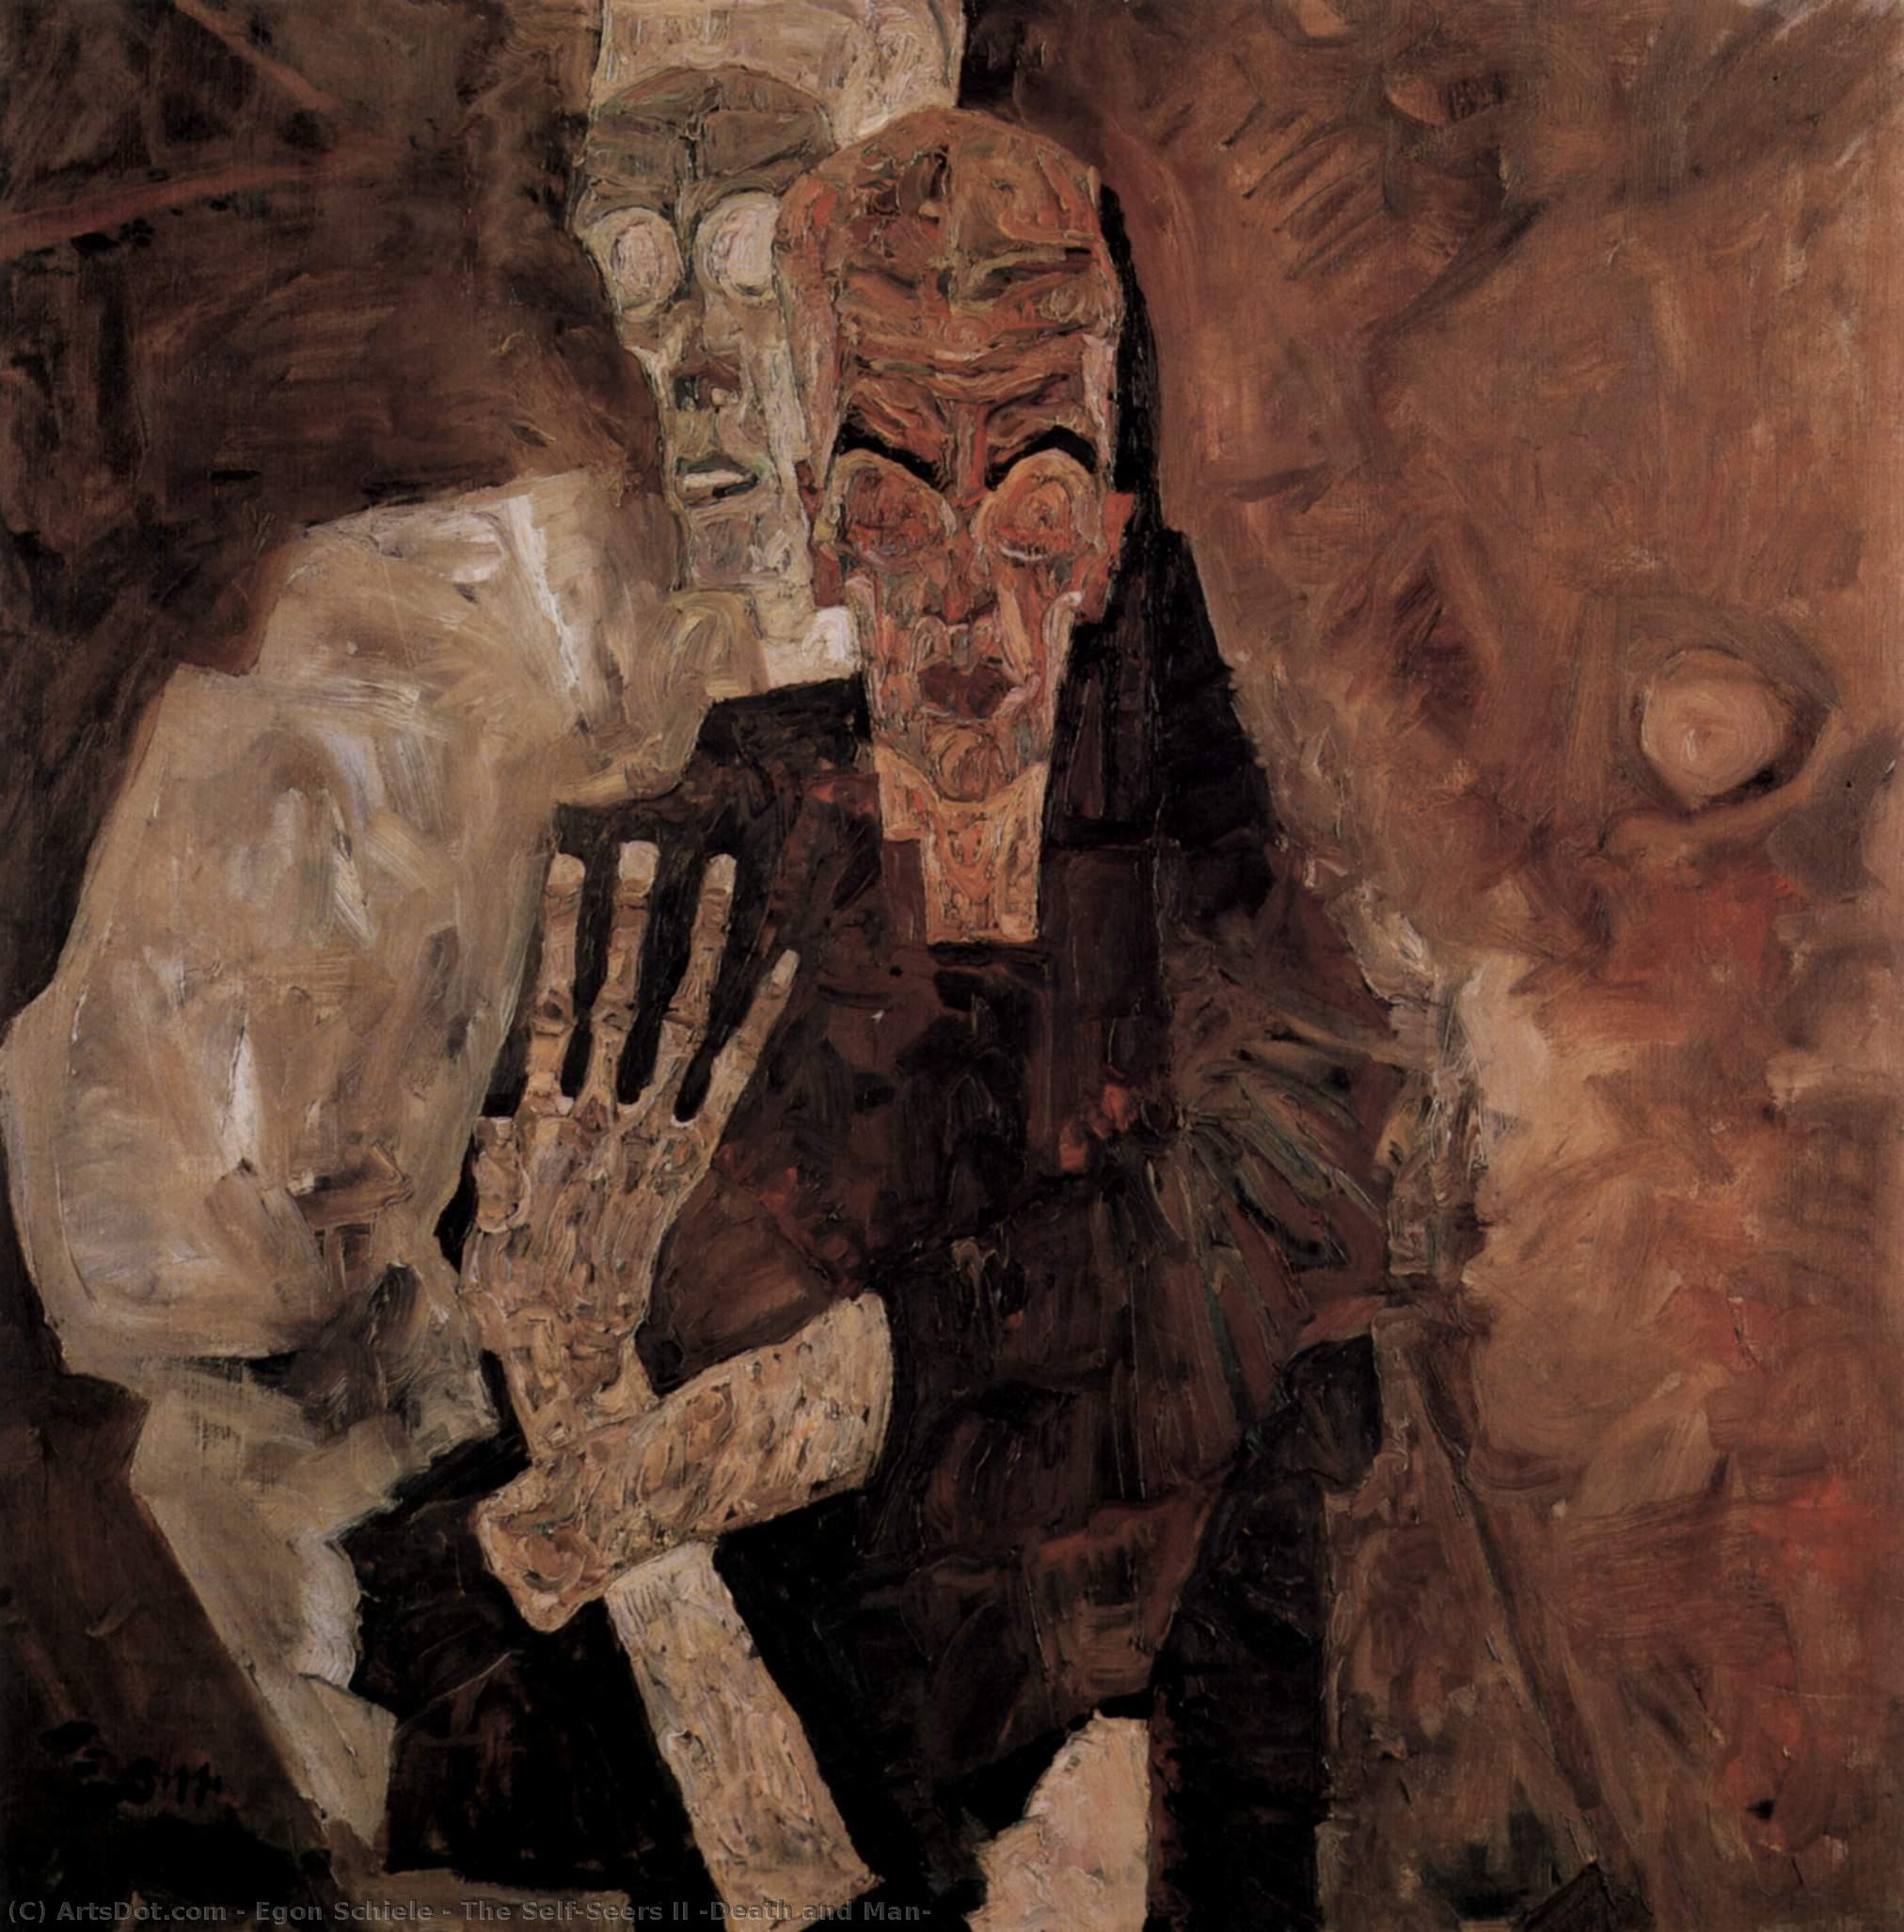 Compra Riproduzioni D'arte Del Museo Il Sé II (Morte e Uomo), 1911 di Egon Schiele (1890-1918, Croatia) | ArtsDot.com